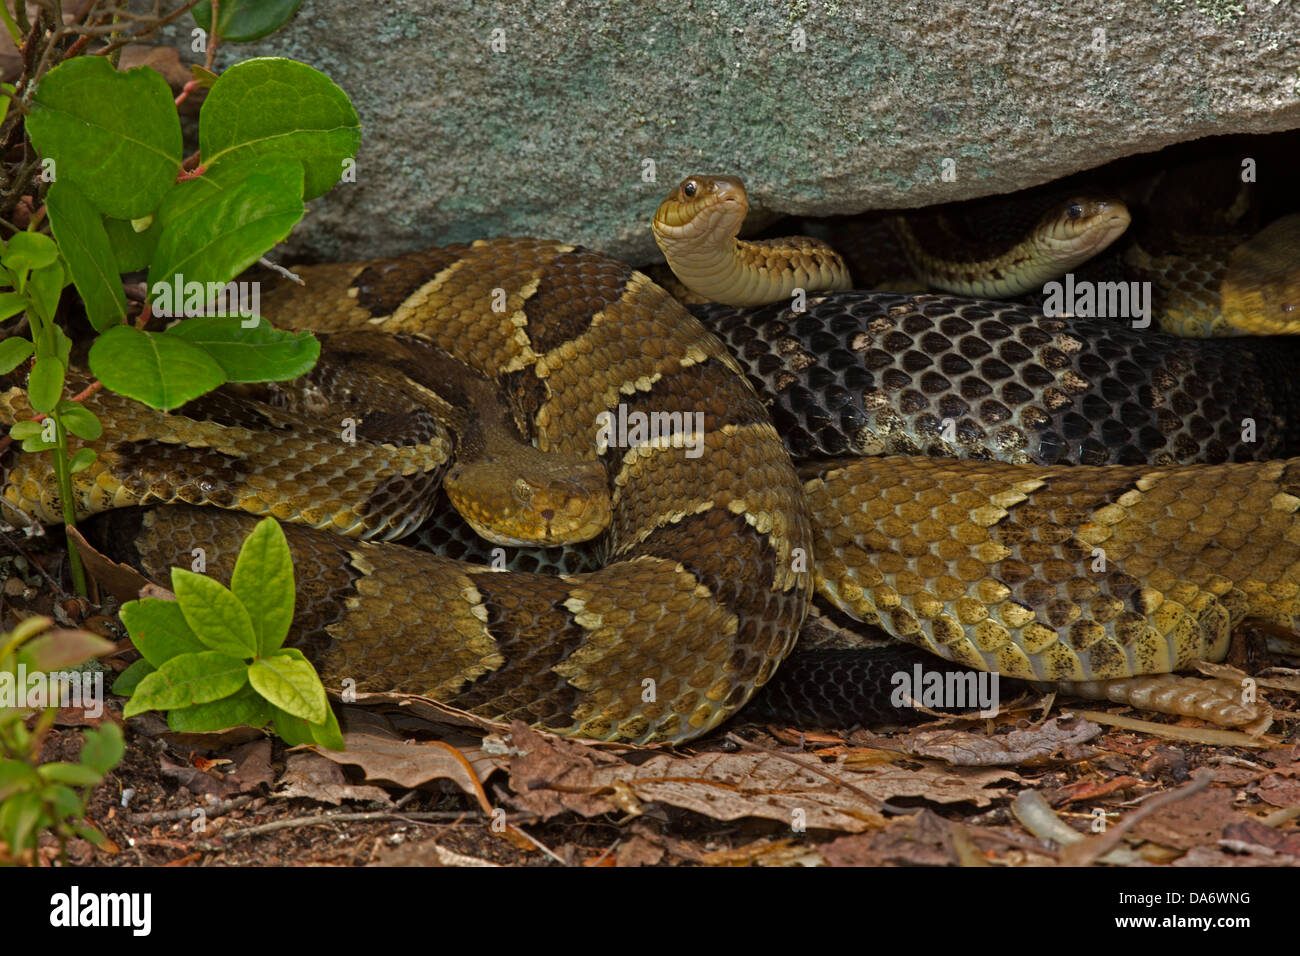 Timber rattlesnakes, Crotalus horridus, Pennsylvania,gravid females basking, common garter snake Thamnophis sirtalis present too Stock Photo